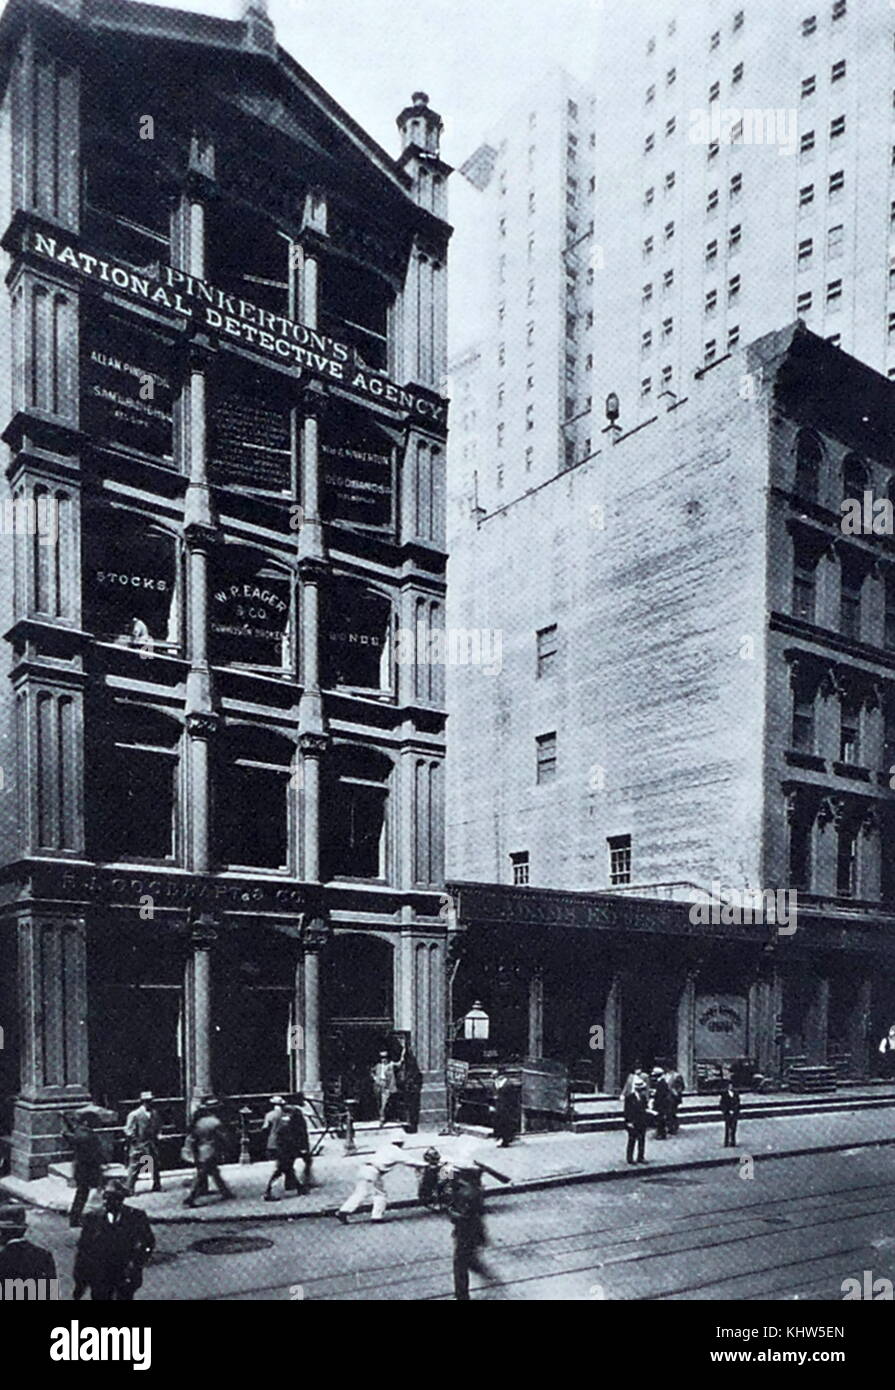 Fotografía de las oficinas de la Agencia de Detectives Pinkerton nacional en la Ciudad de Nueva York. Fecha Siglo XX Foto de stock